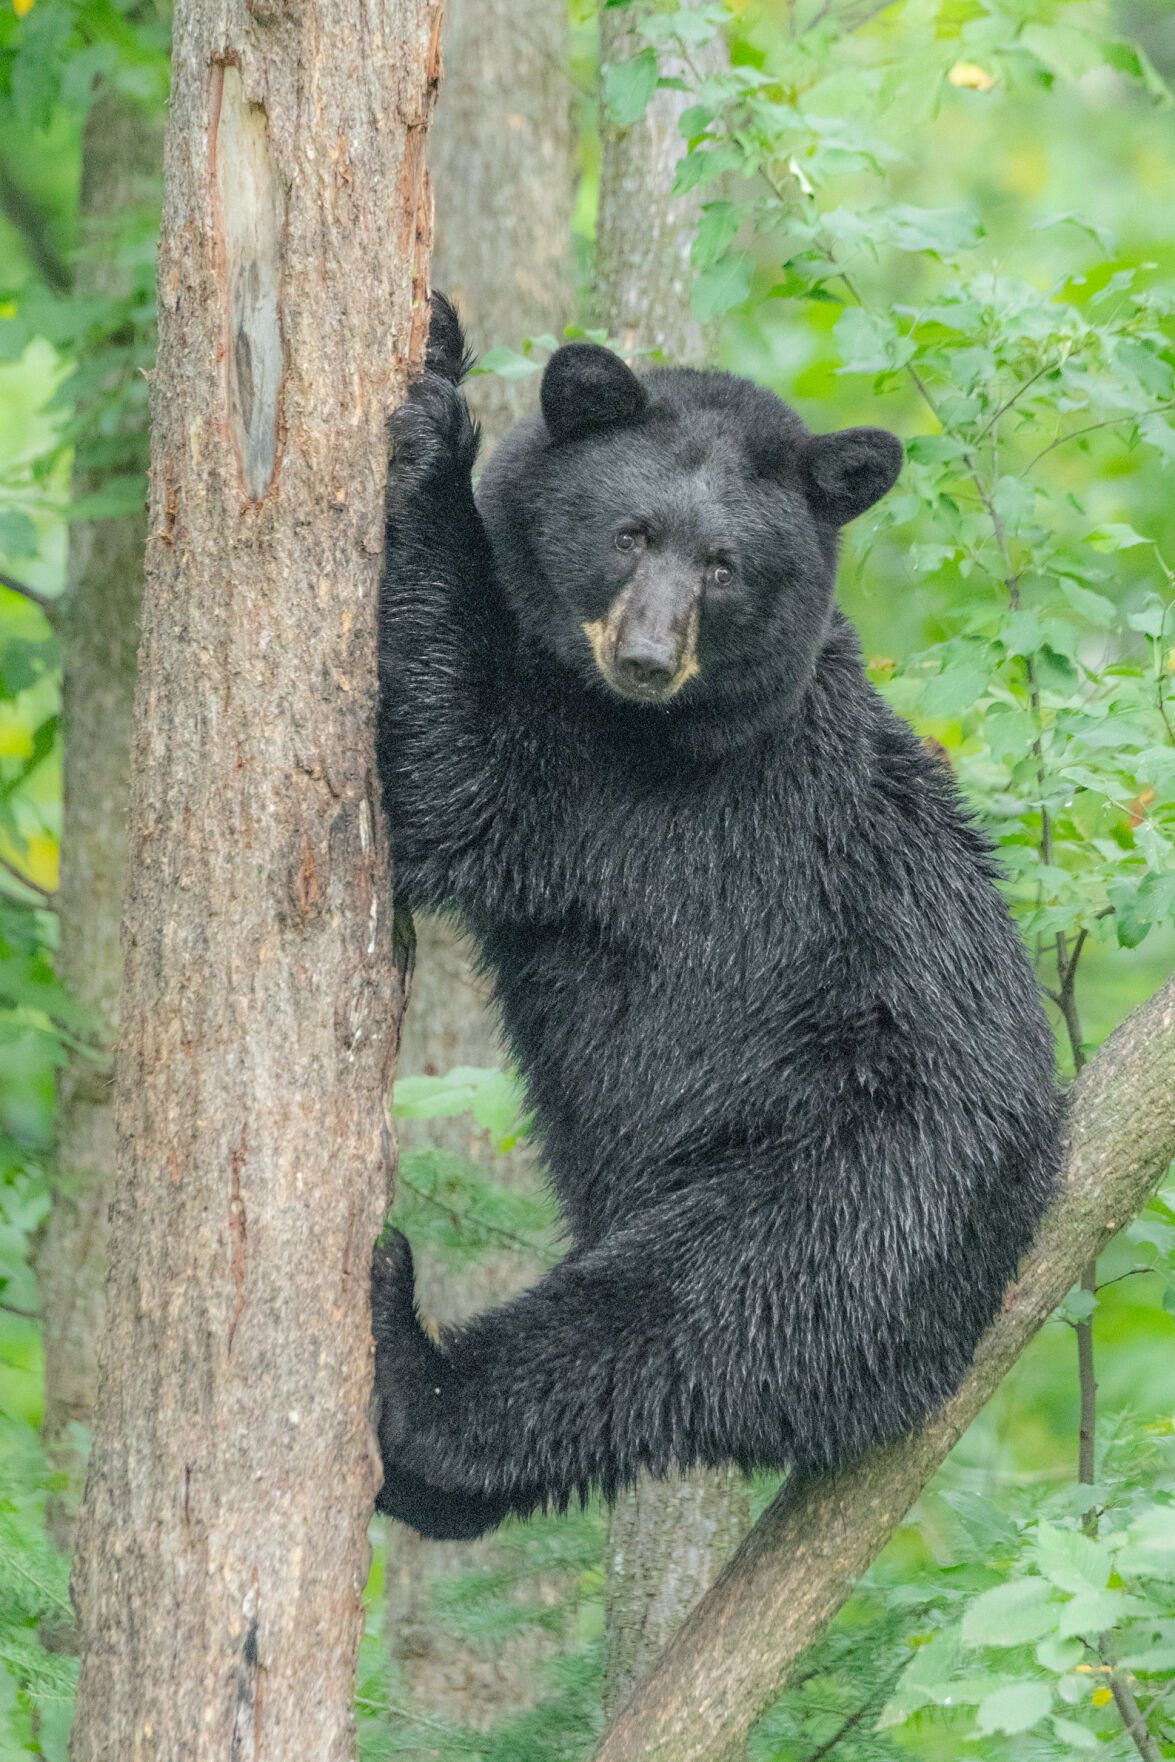 Black bear by Bill Lea 2